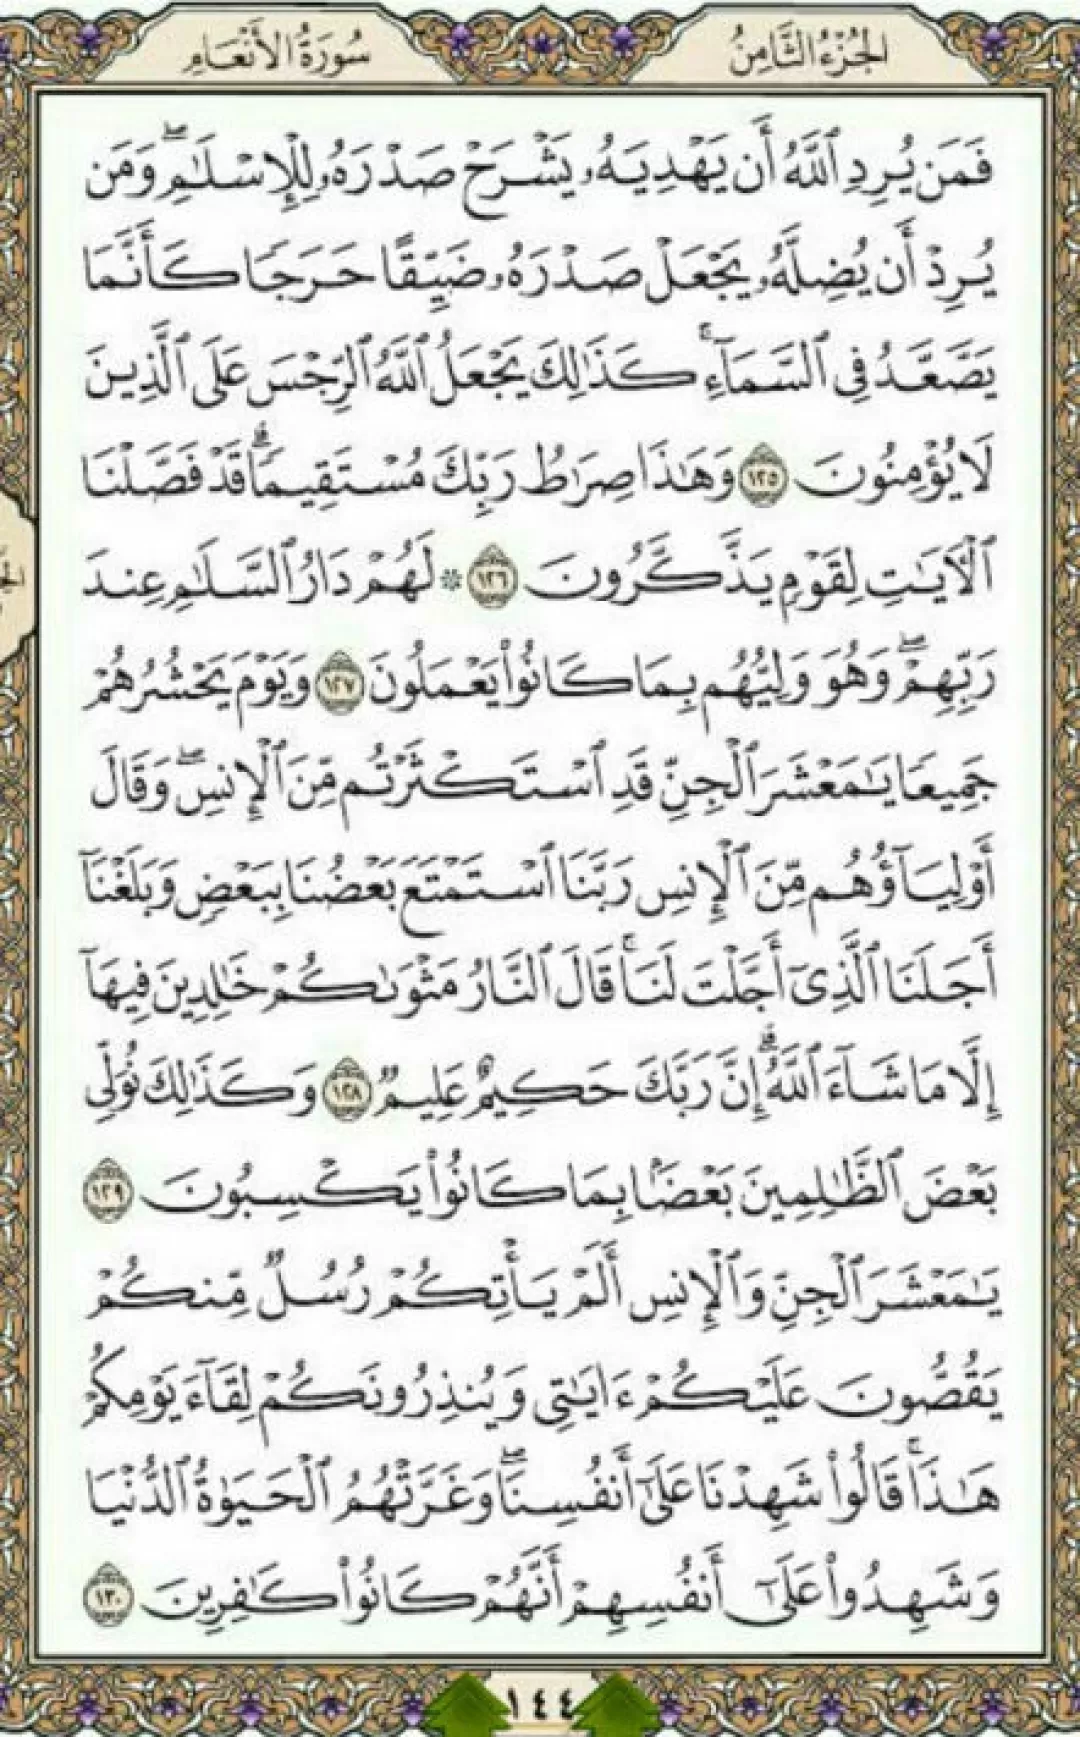 روزانه یک صفحه با انوار الهی قرآن